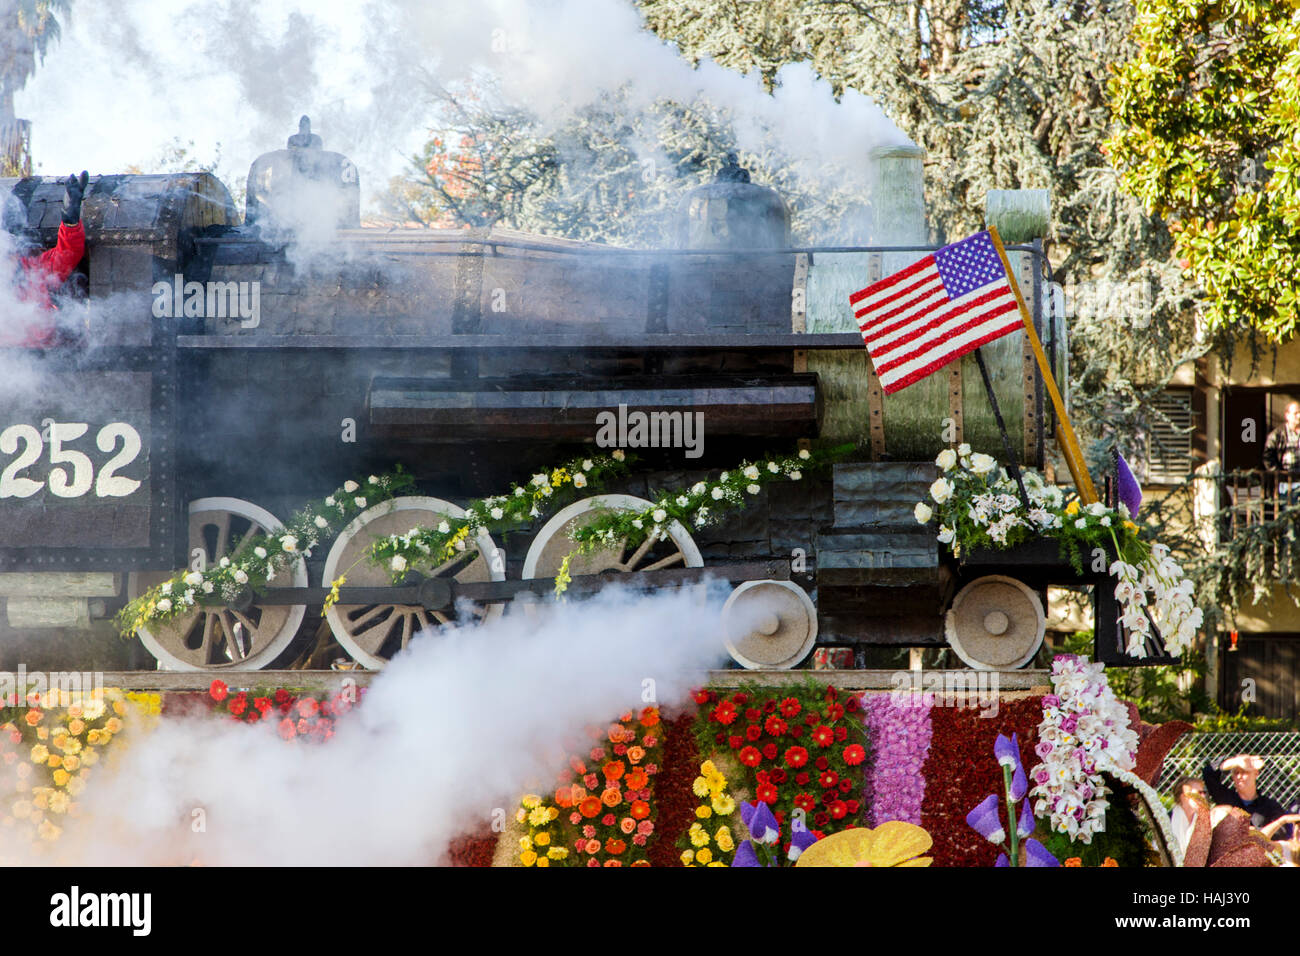 Float dekoriert wie Dampflokomotive mit Blumen in den jährlichen neuen Jahre Tag Rose Bowl Parade, Pasadena, Kalifornien, USA Stockfoto